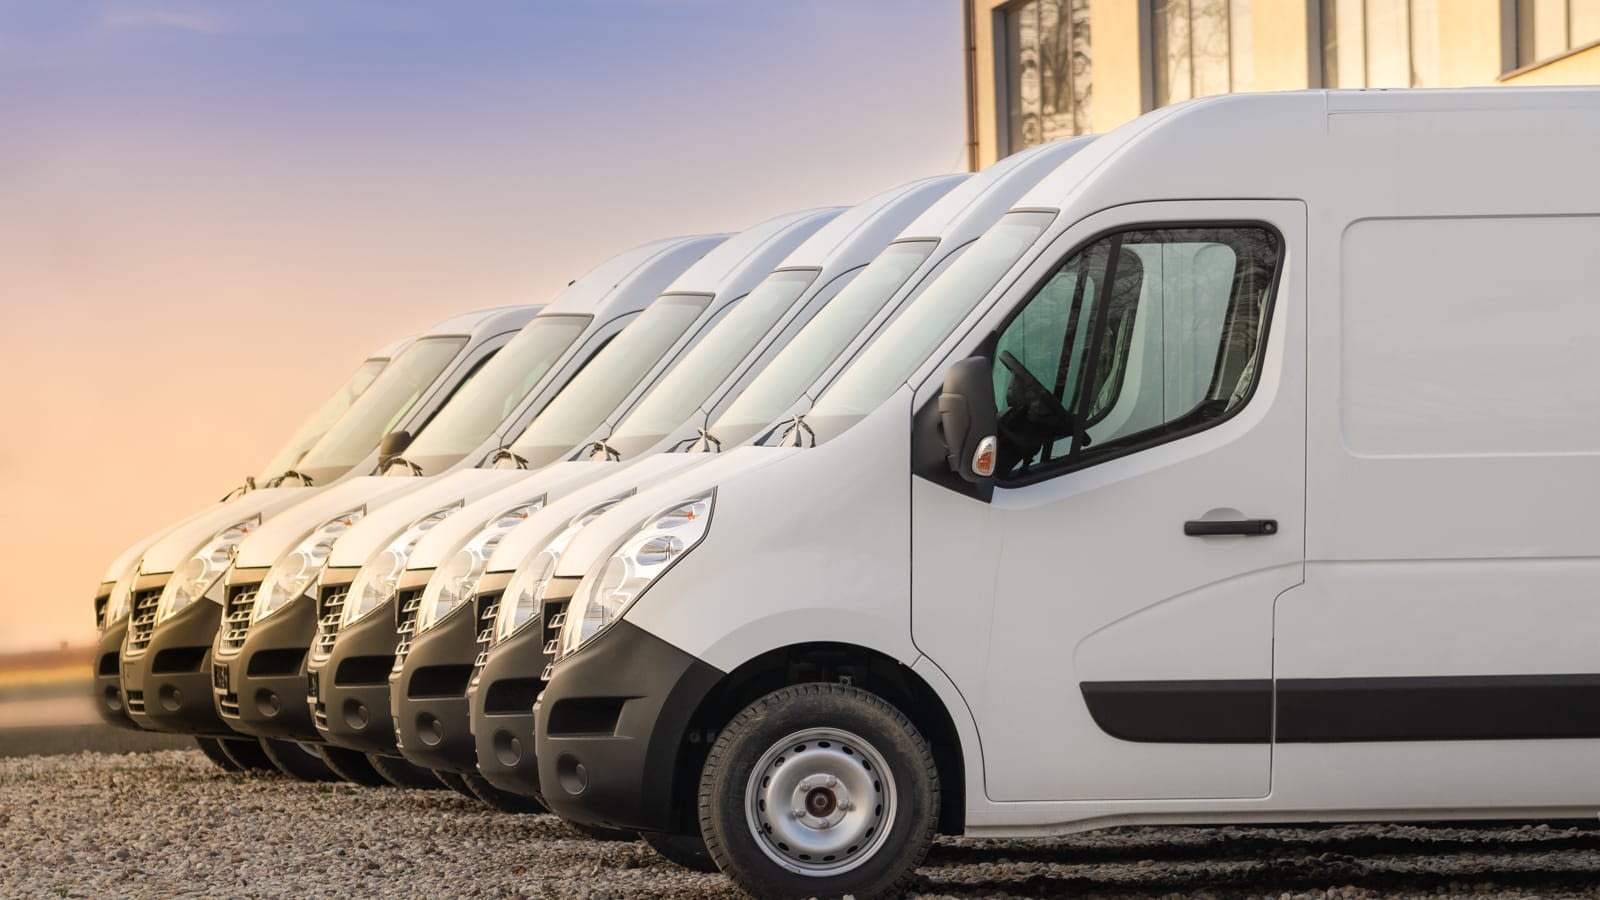 Fleet of white commercial vans